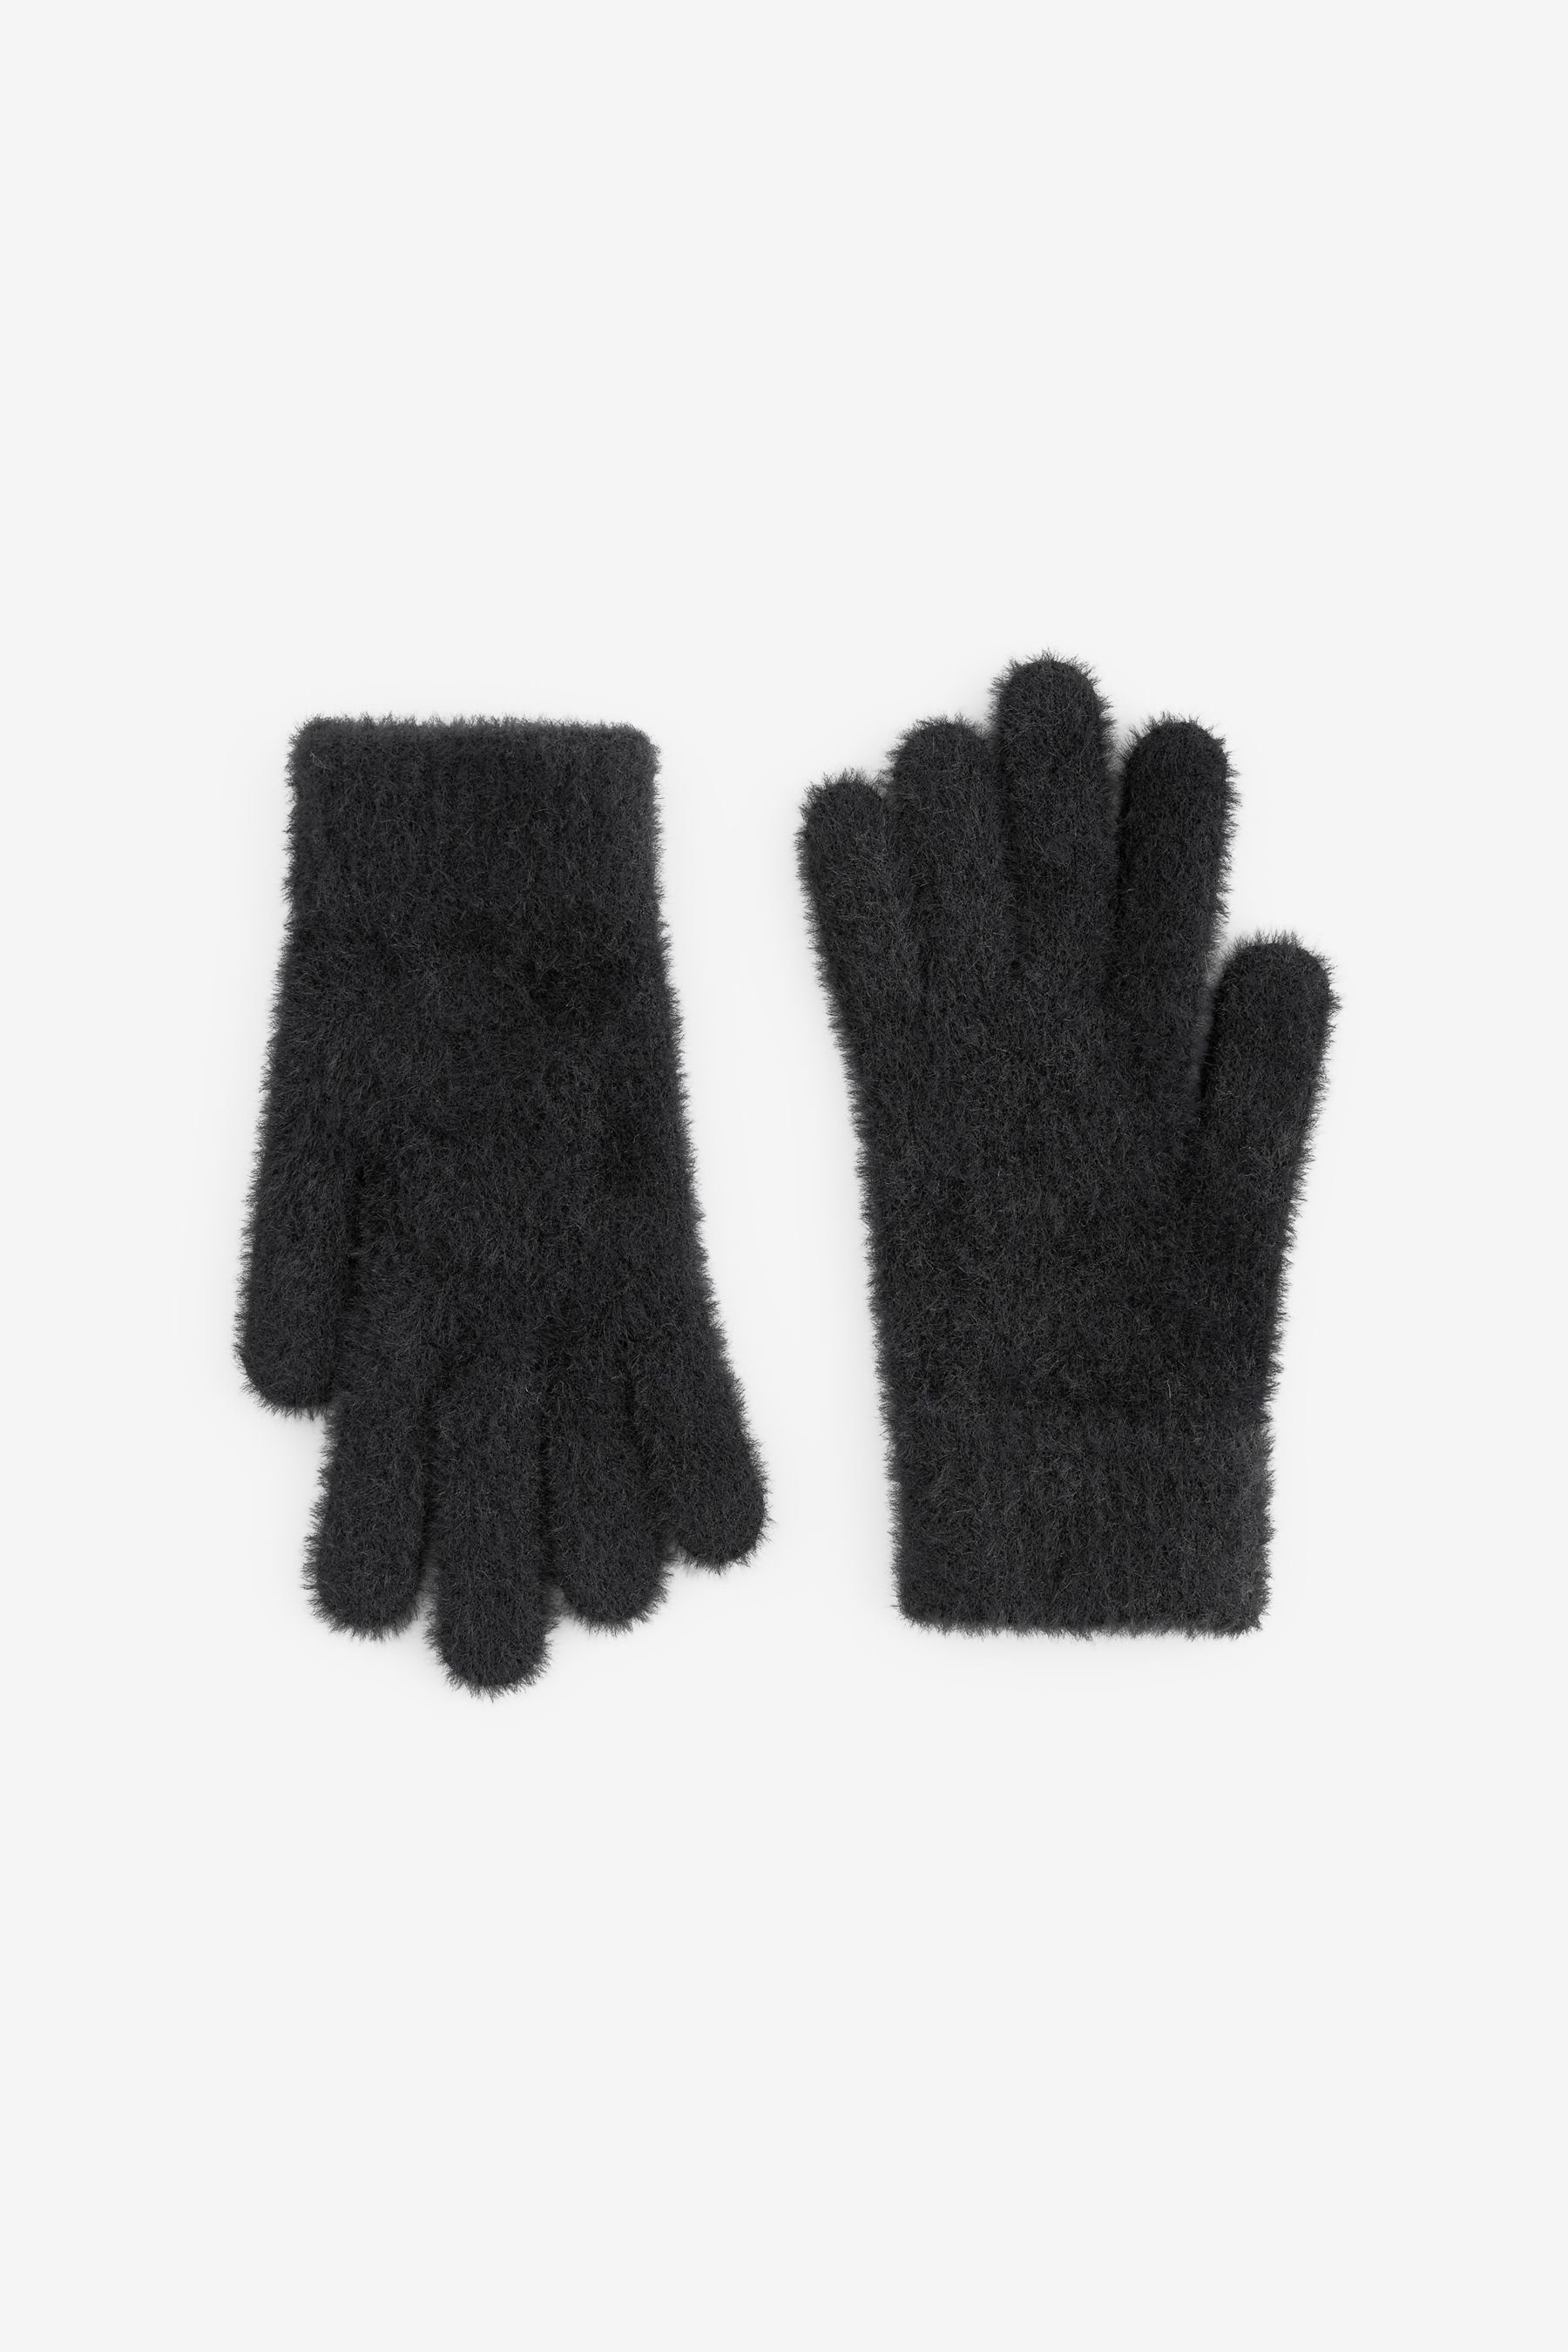 Next Strickhandschuhe Flauschige Handschuhe Black